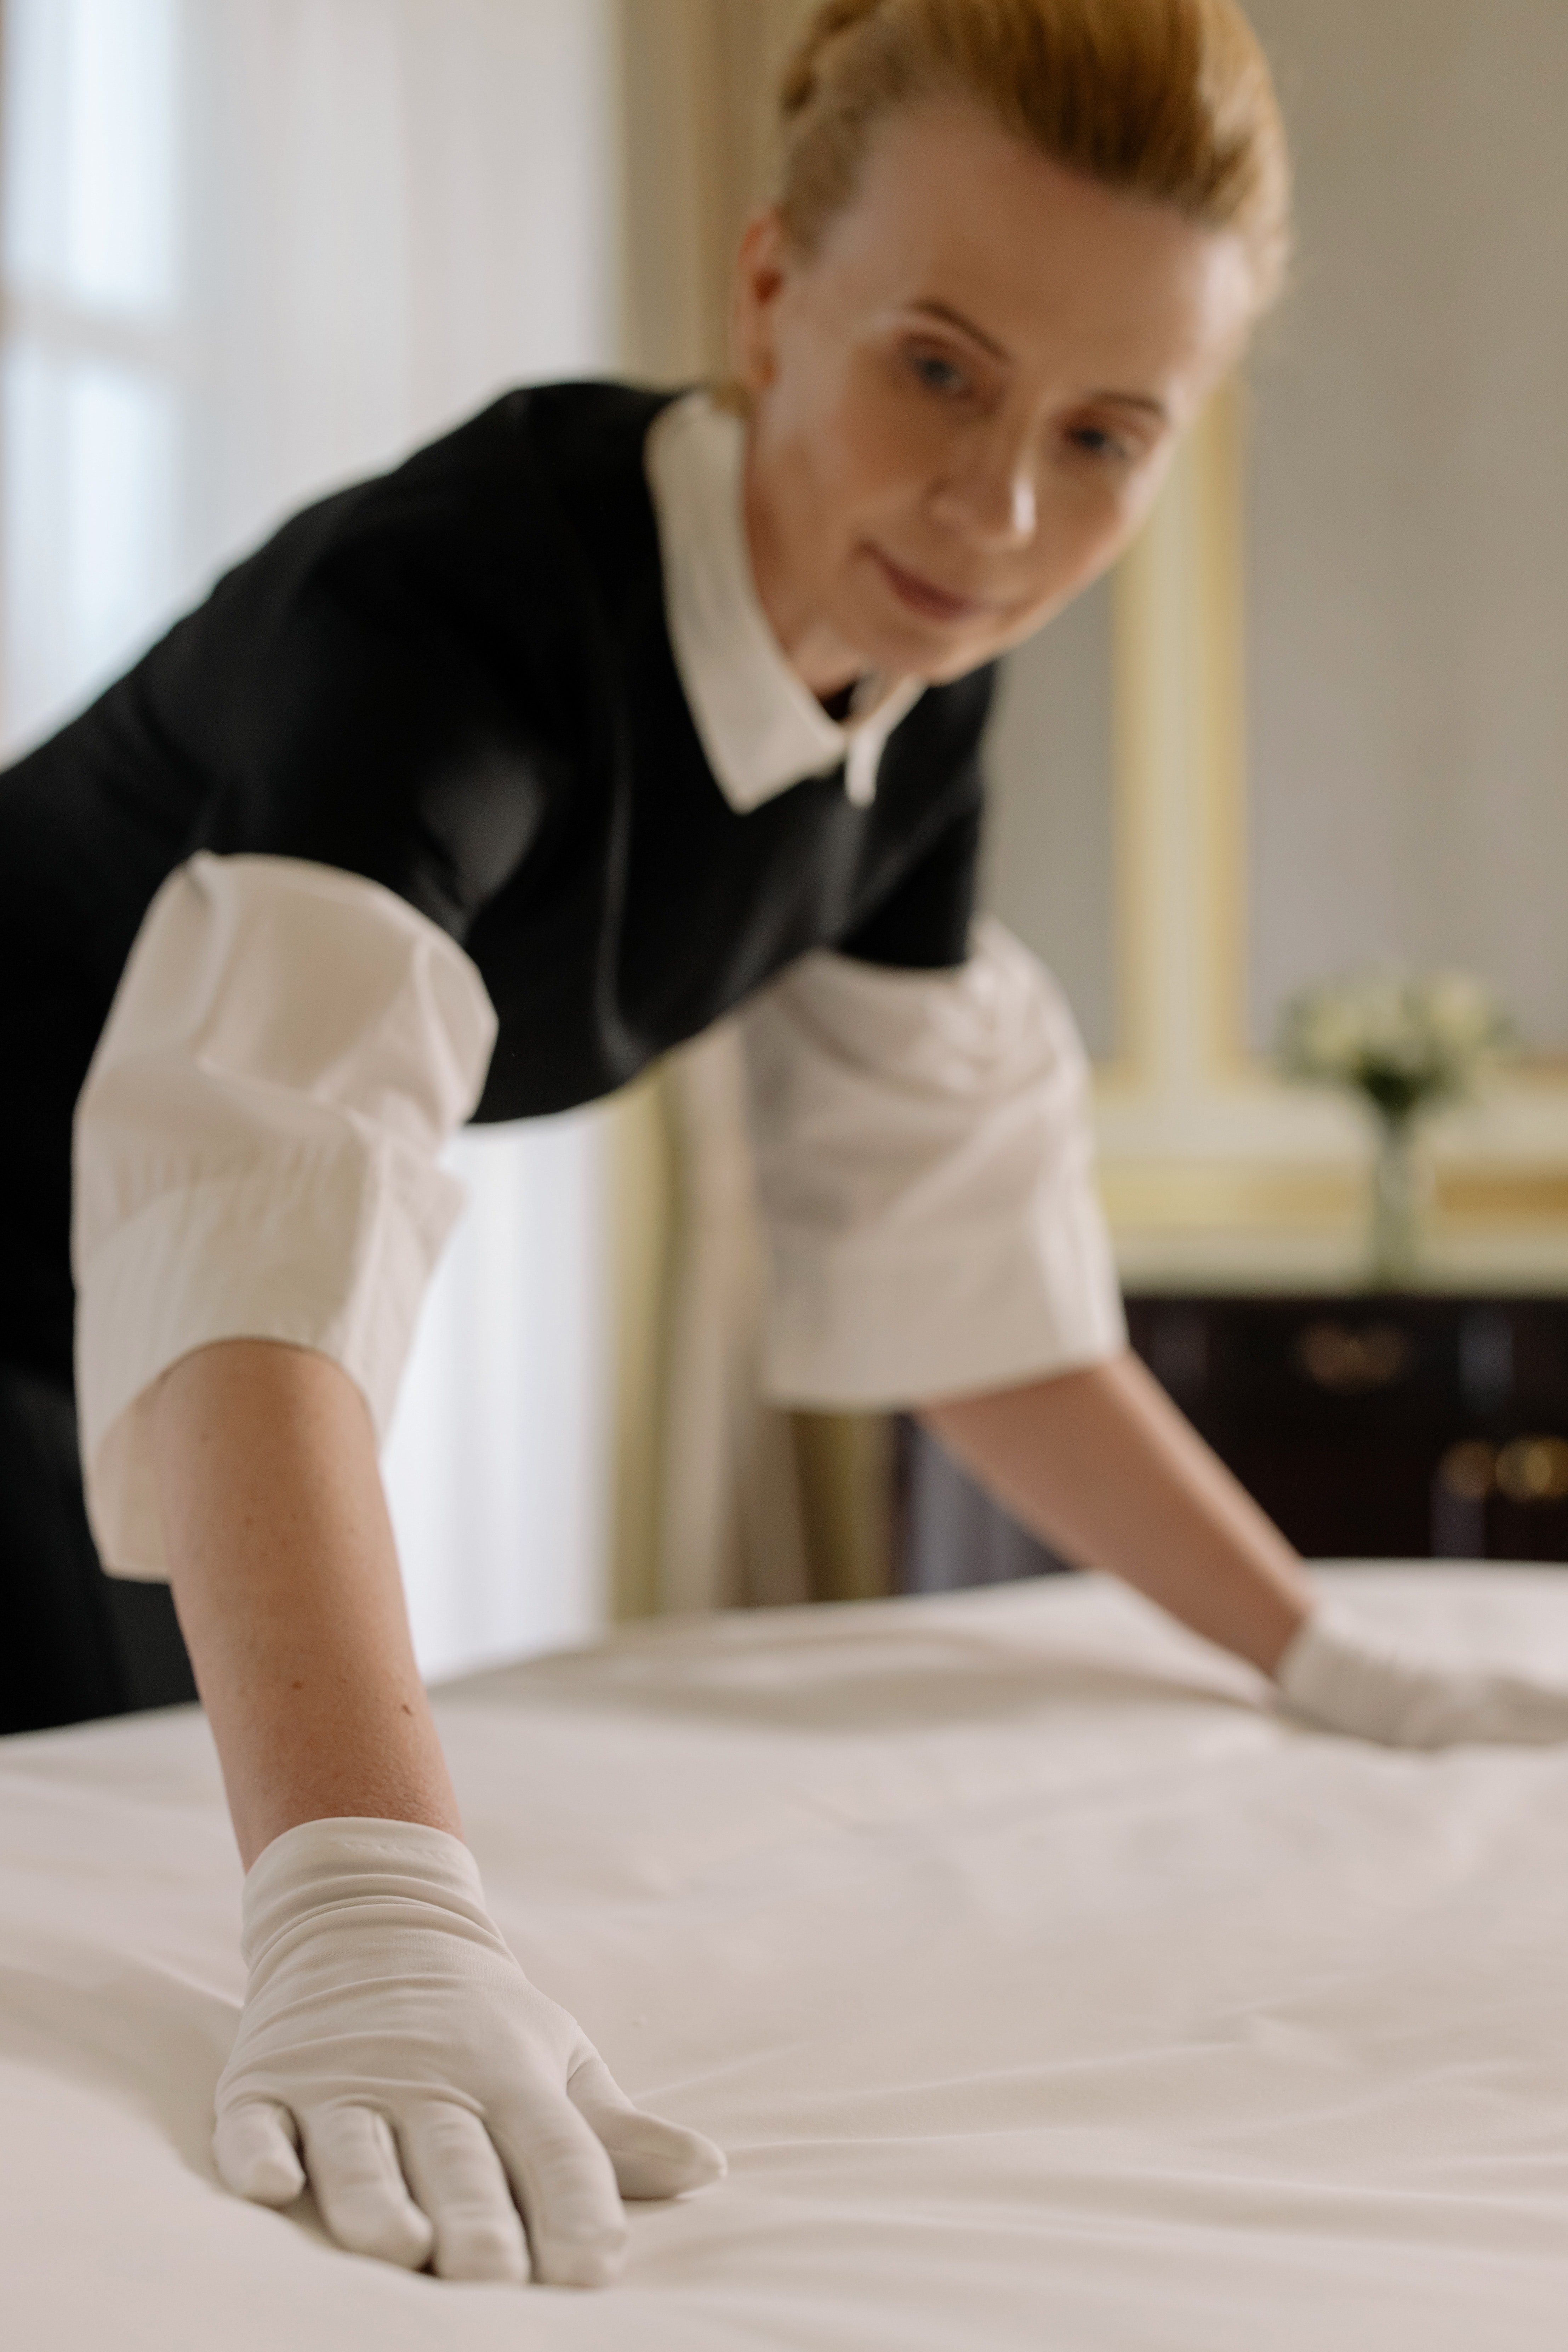 Una trabajadora doméstica arreglando una cama. | Foto: Pexels